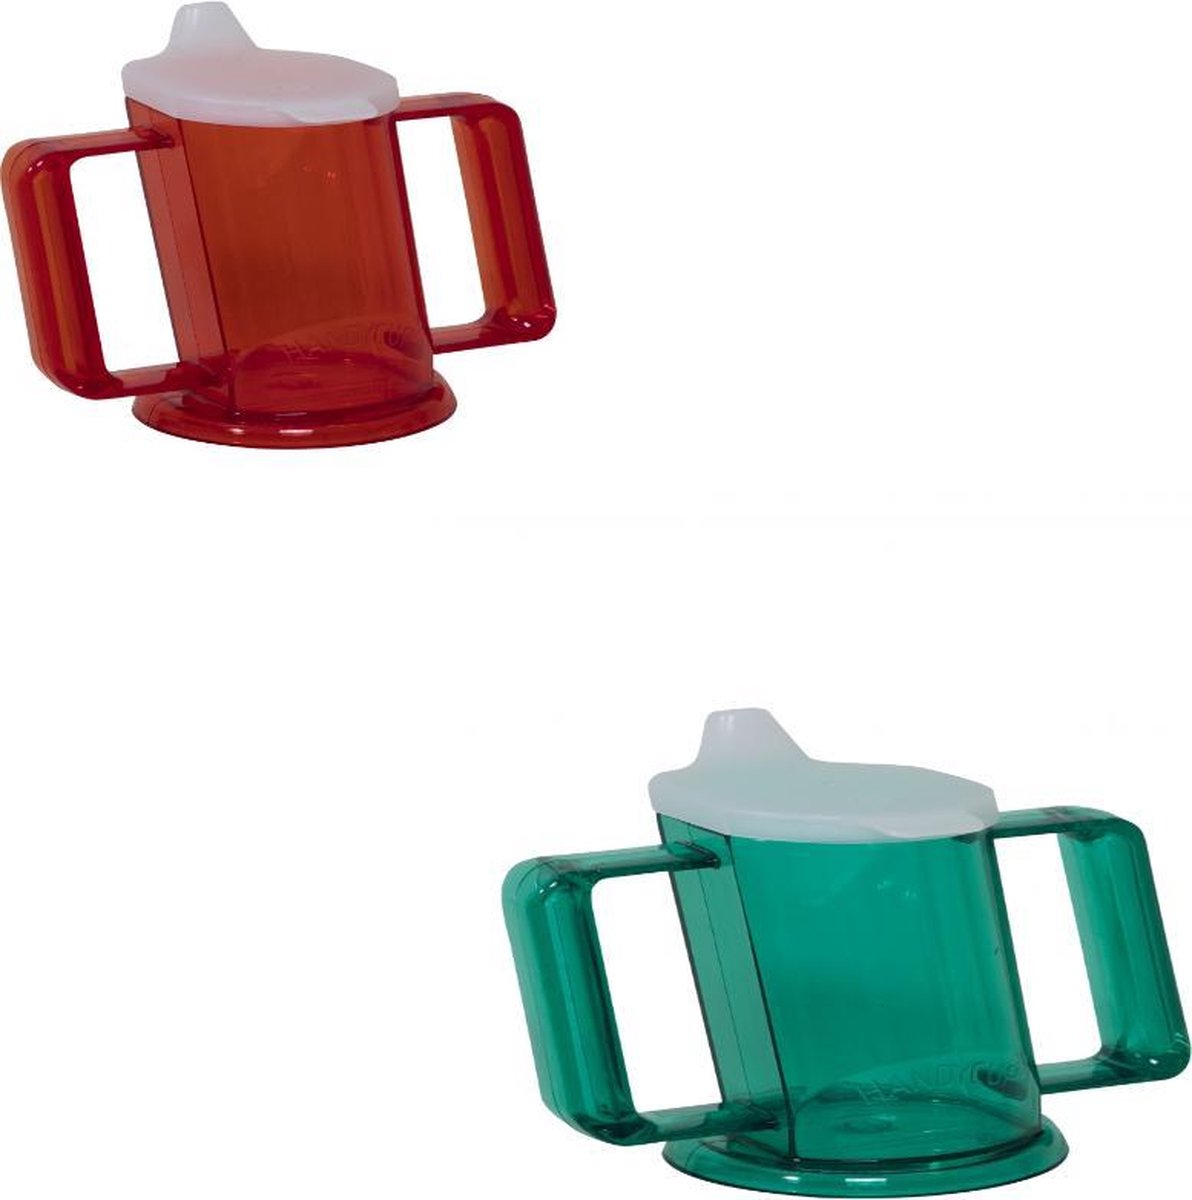 Handycup drinkbeker met tuit, set van 2 stuks, rood en groen.